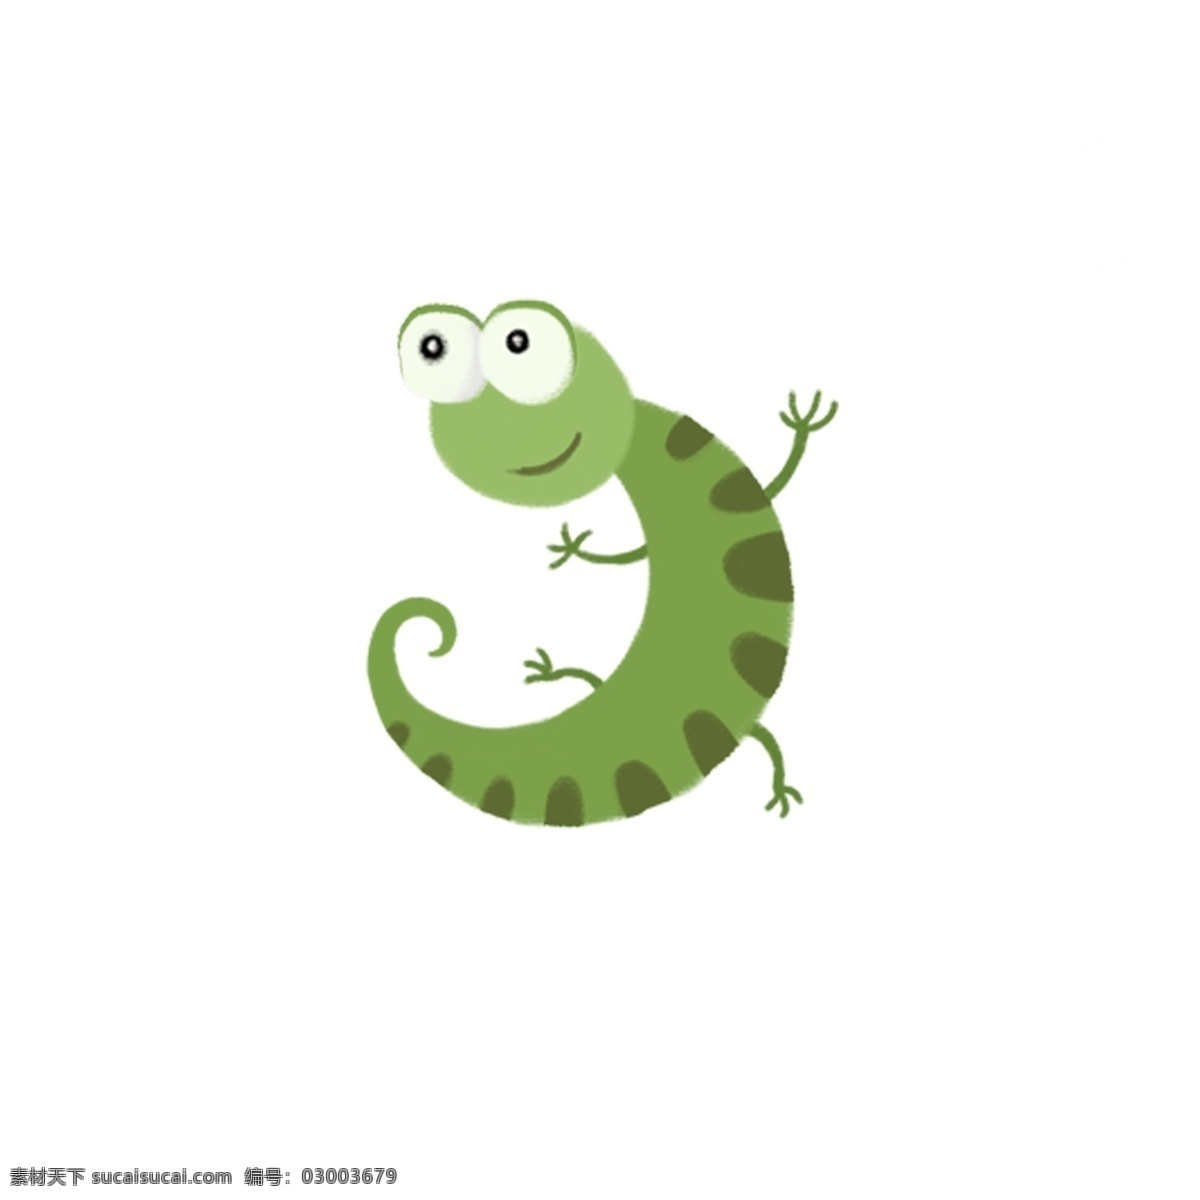 手绘 简约 创意 卡通 可爱 蜥蜴 变色龙 动物 插画